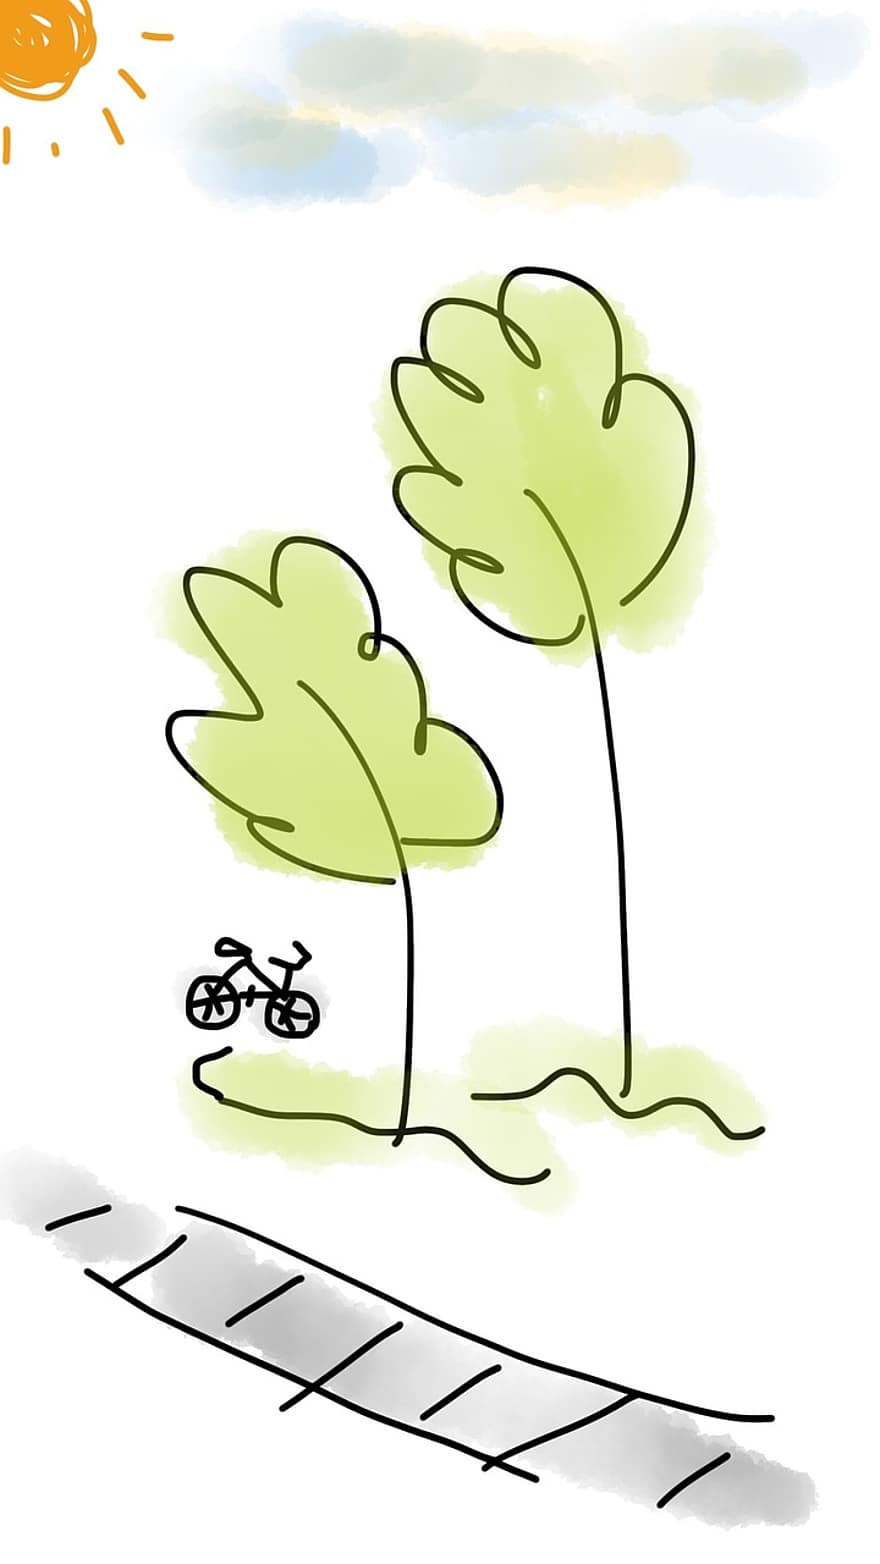 รถจักรยาน, ต้นไม้, กลางแจ้ง, สีเขียว, ทาง, กีฬา, จักรยาน, ถนน, กิจกรรม, การขี่จักรยาน, ดวงอาทิตย์